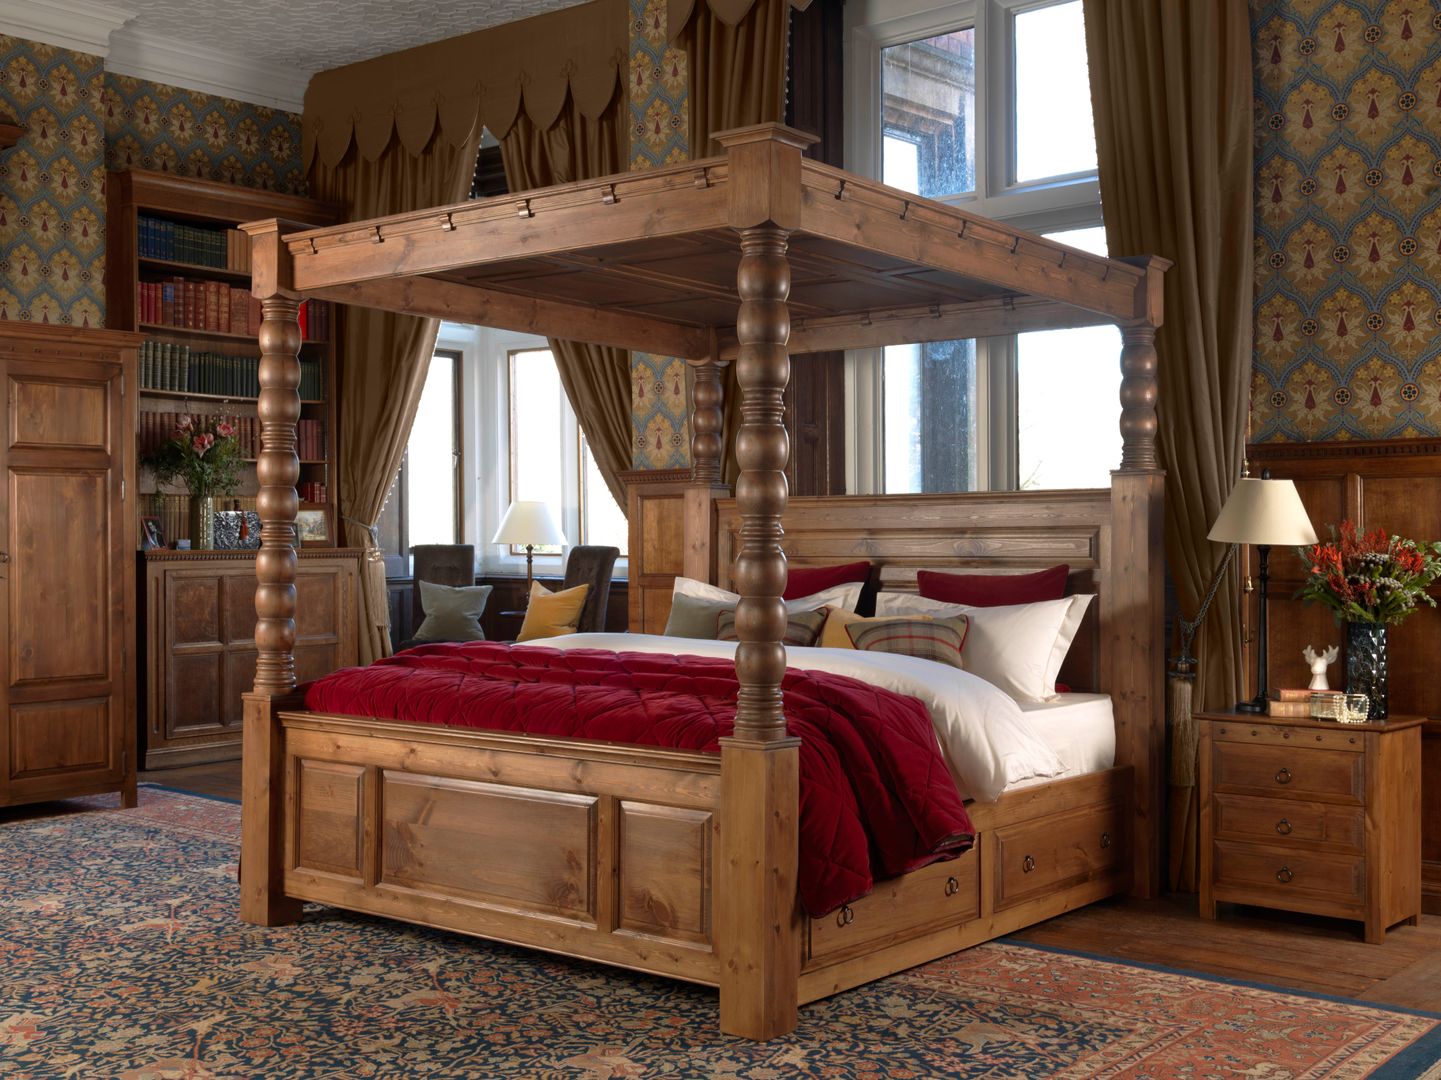 The Ambassador Four Poster Bed Revival Beds Спальня в классическом стиле Кровати и изголовья